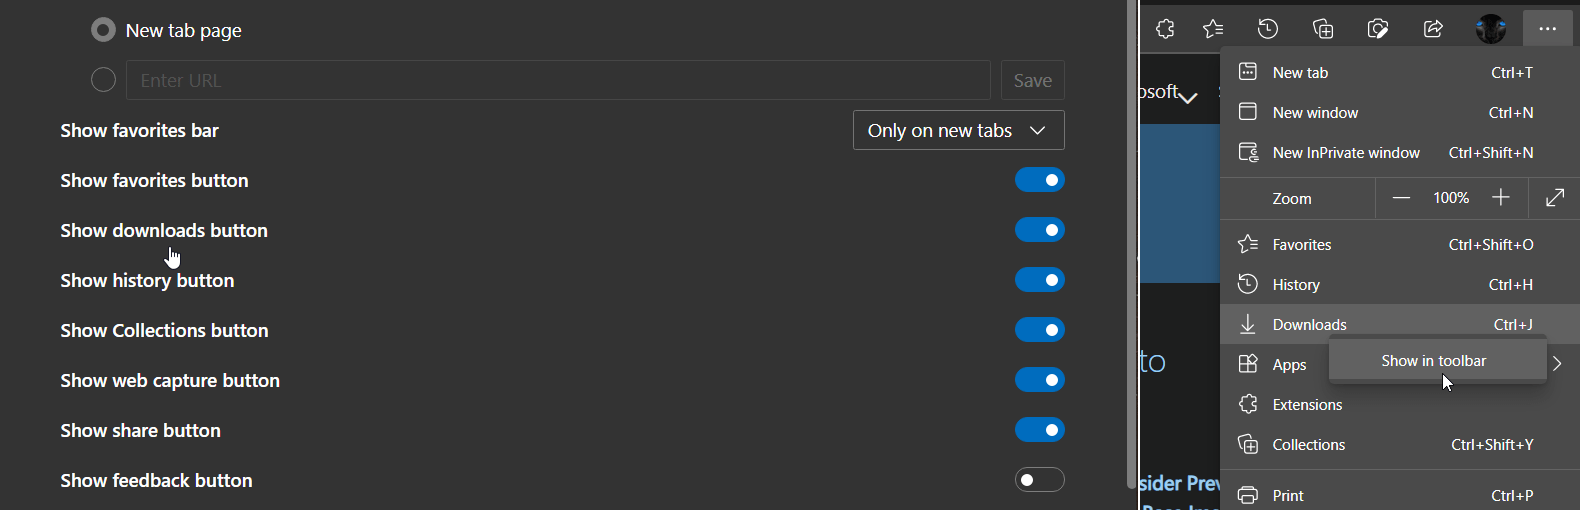 Microsoft Edge Downloads button